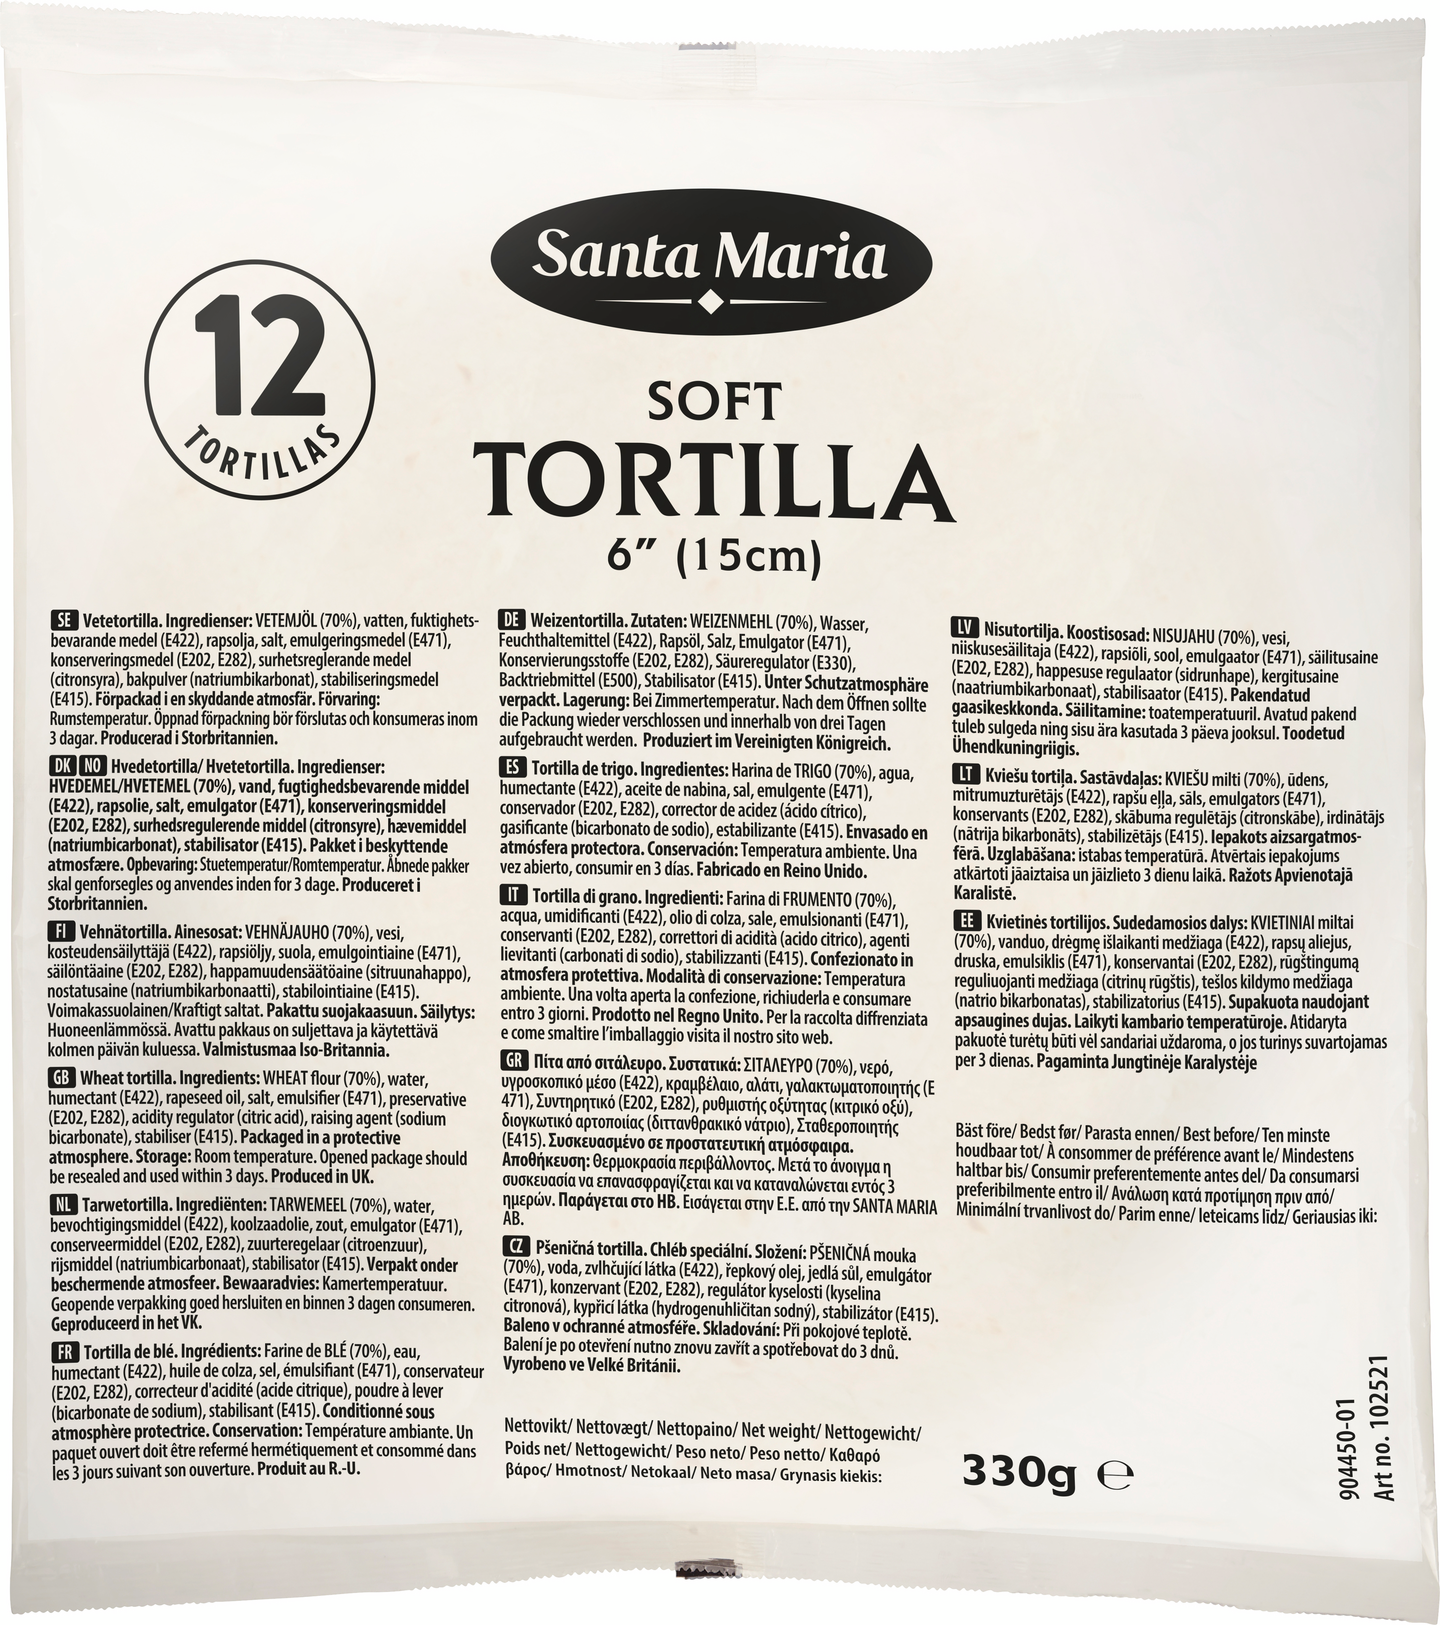 Santa Maria Soft Tortilla 330g